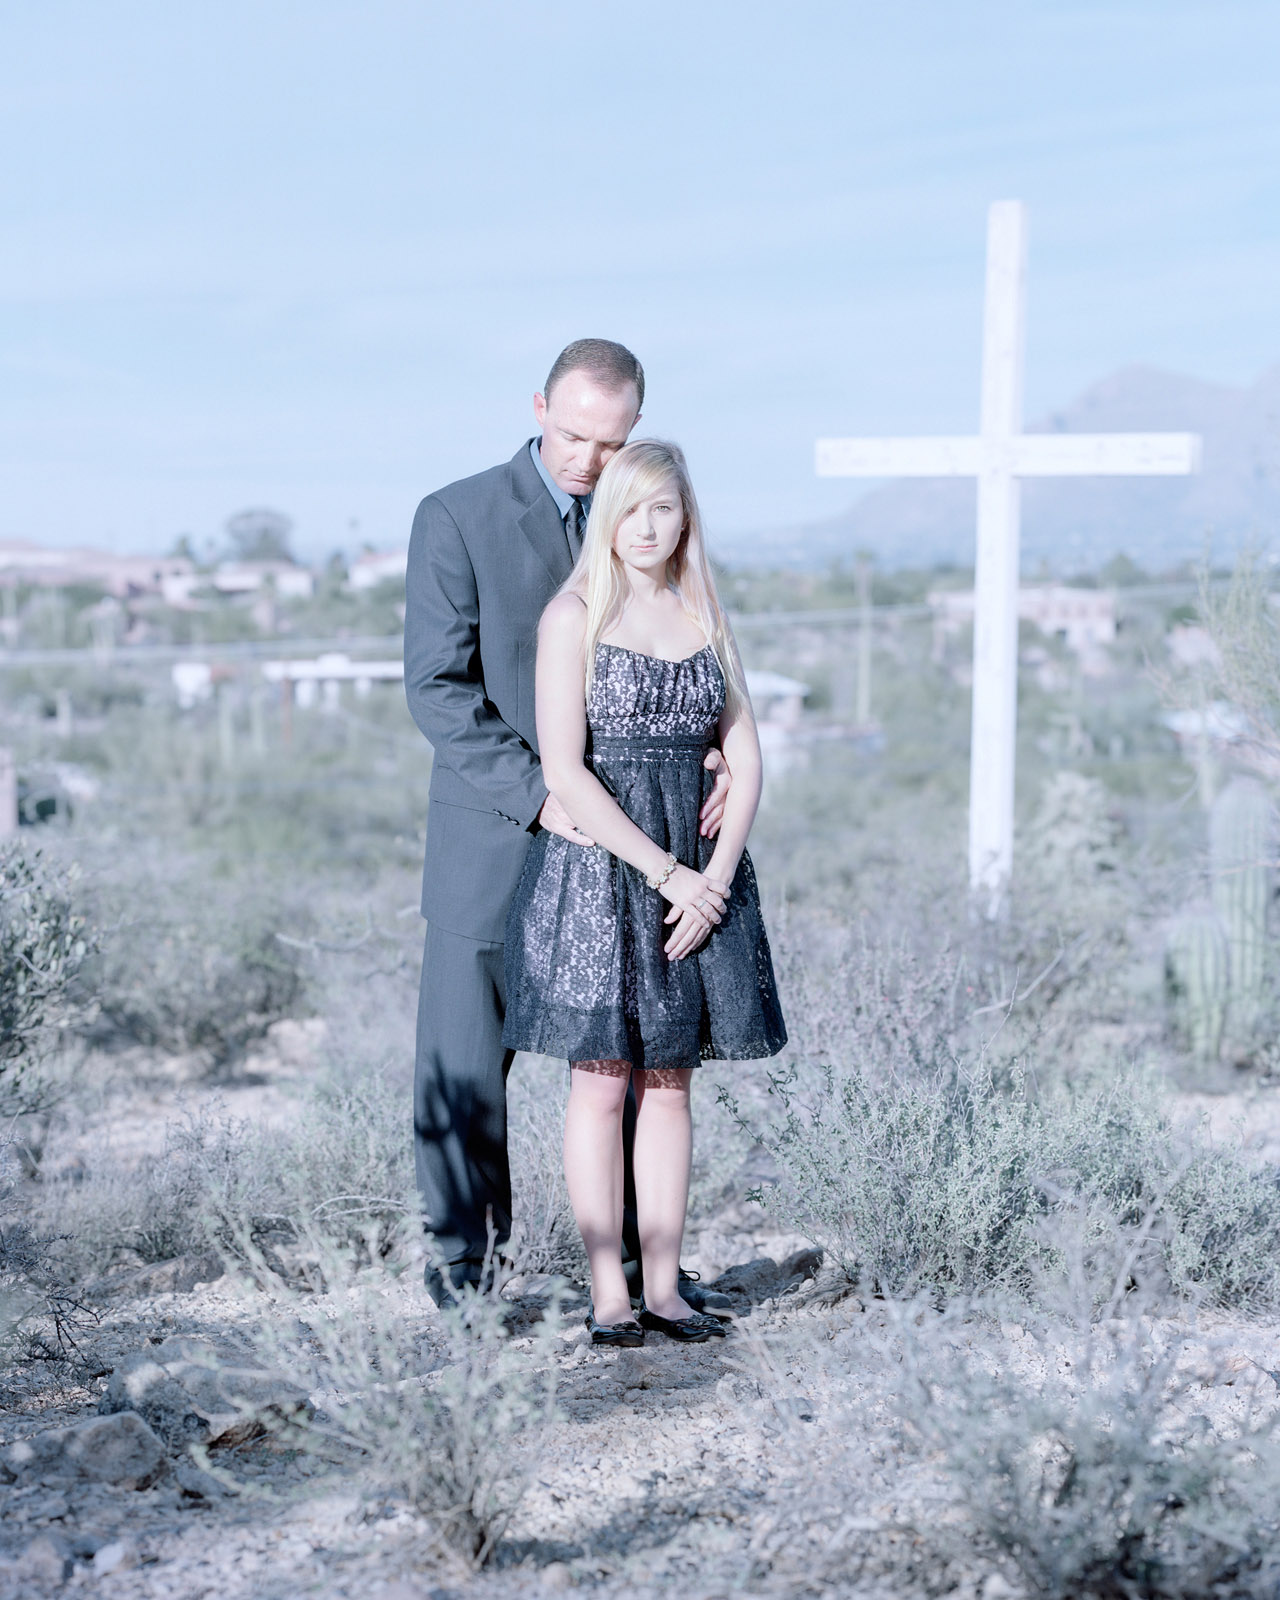 Will & Nicole Roosma, Tucson, Arizona